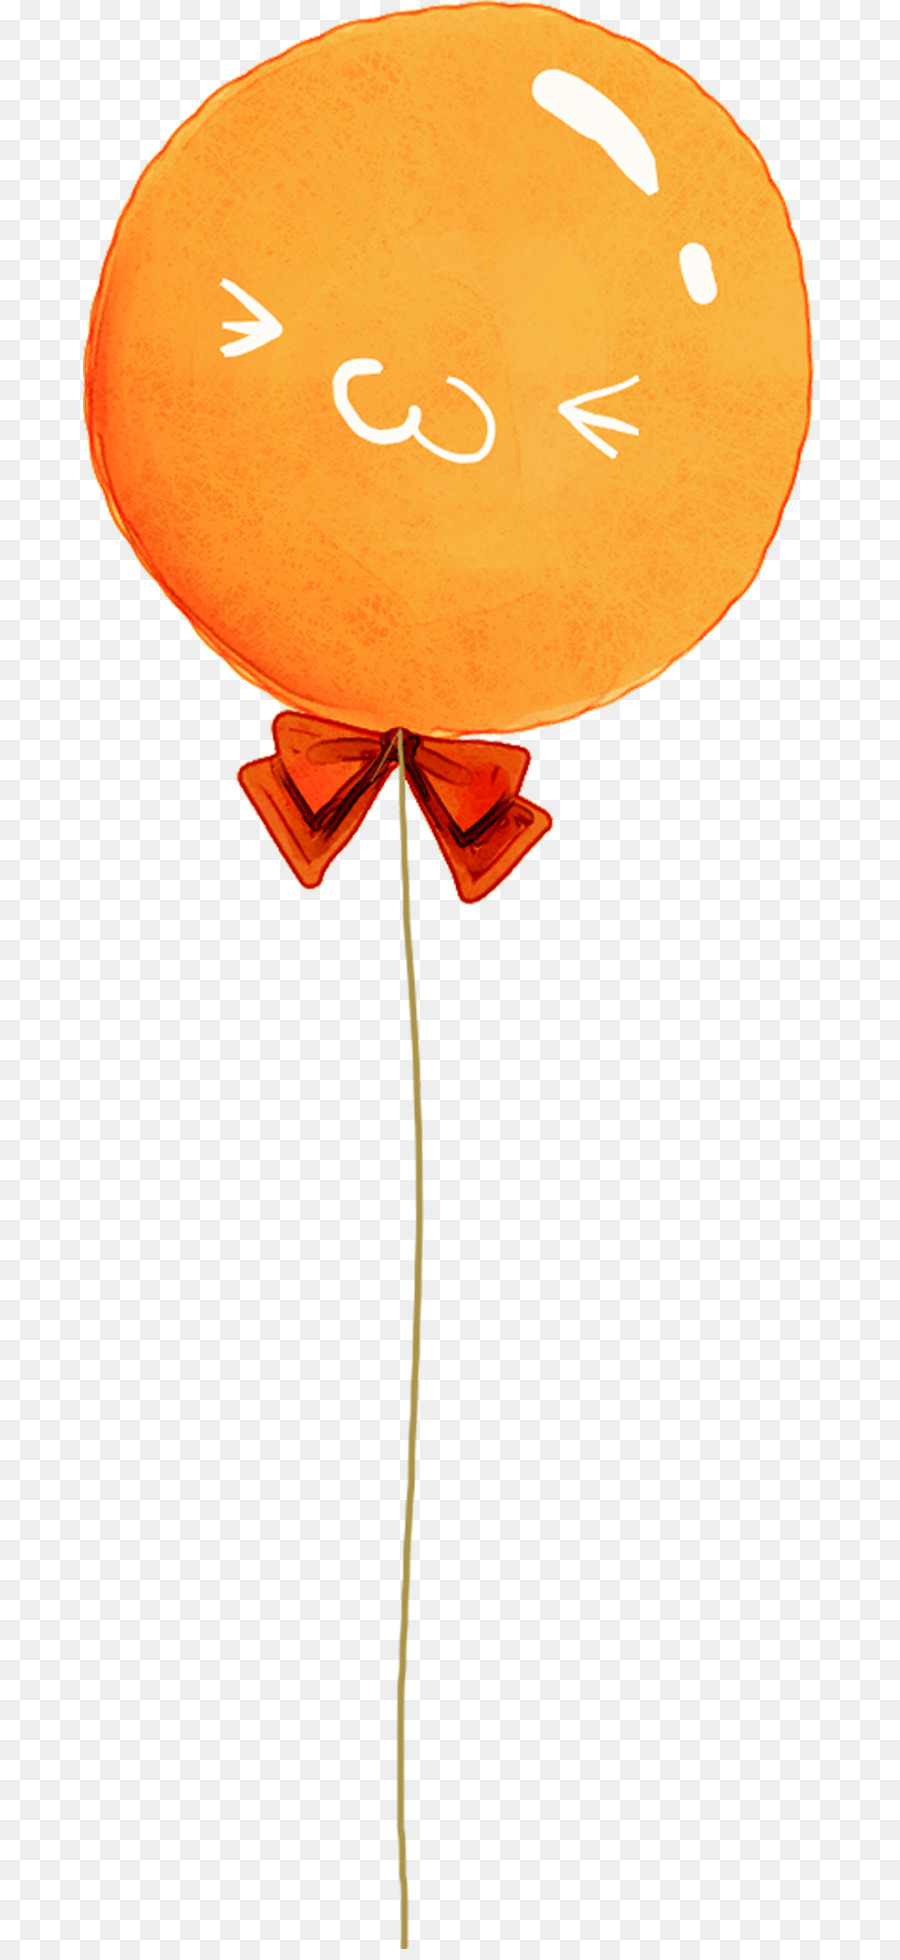 Orange Ballon-Cartoon - Cartoon-orange Ballon